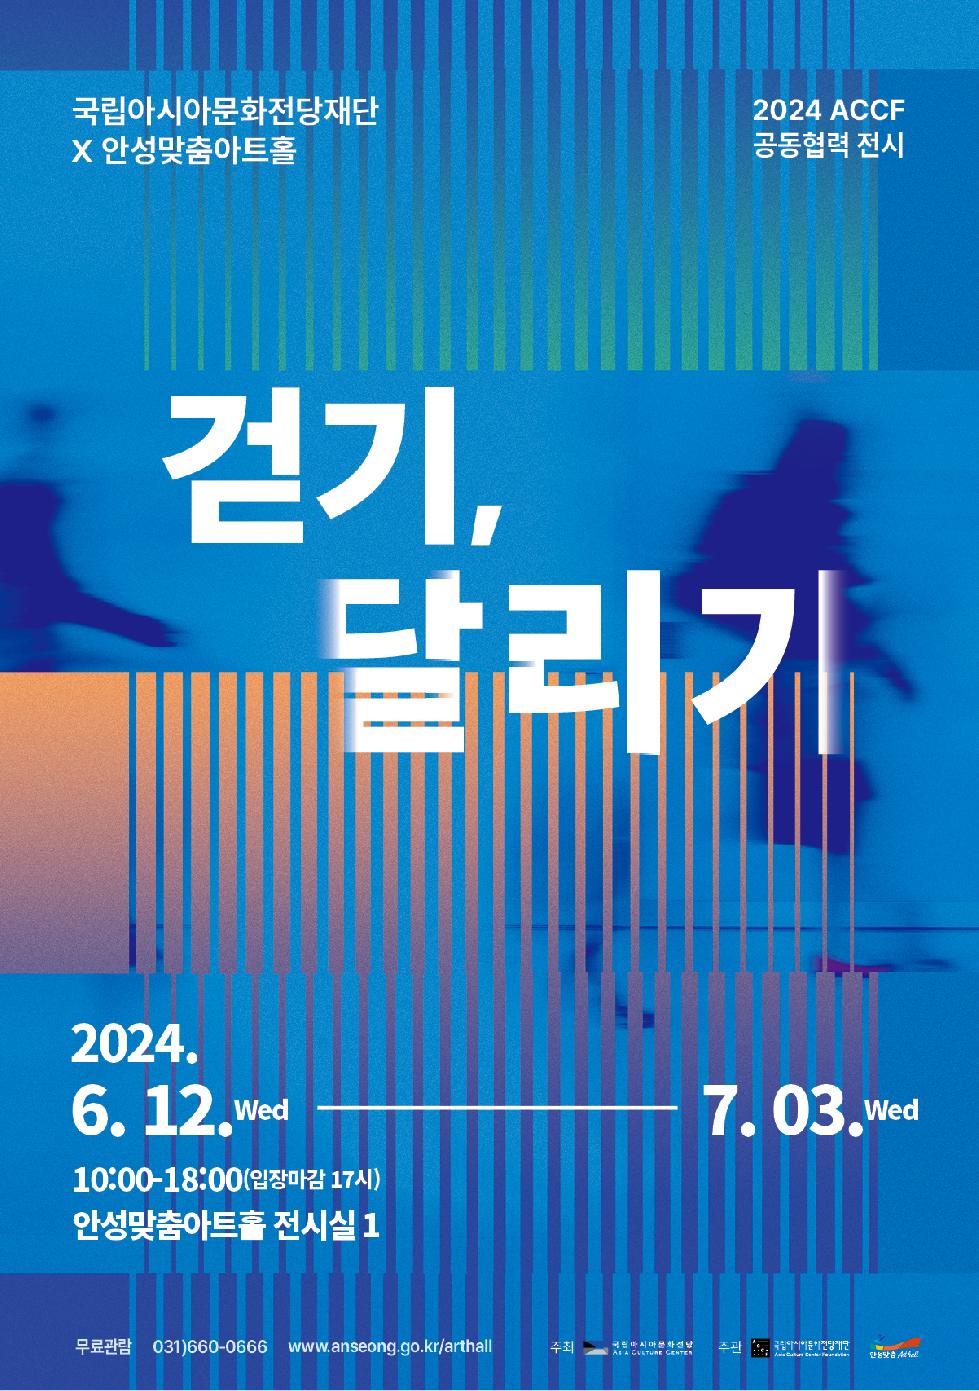 안성시 안성맞춤아트홀, ACCF 공동 협력 전시 展 개최